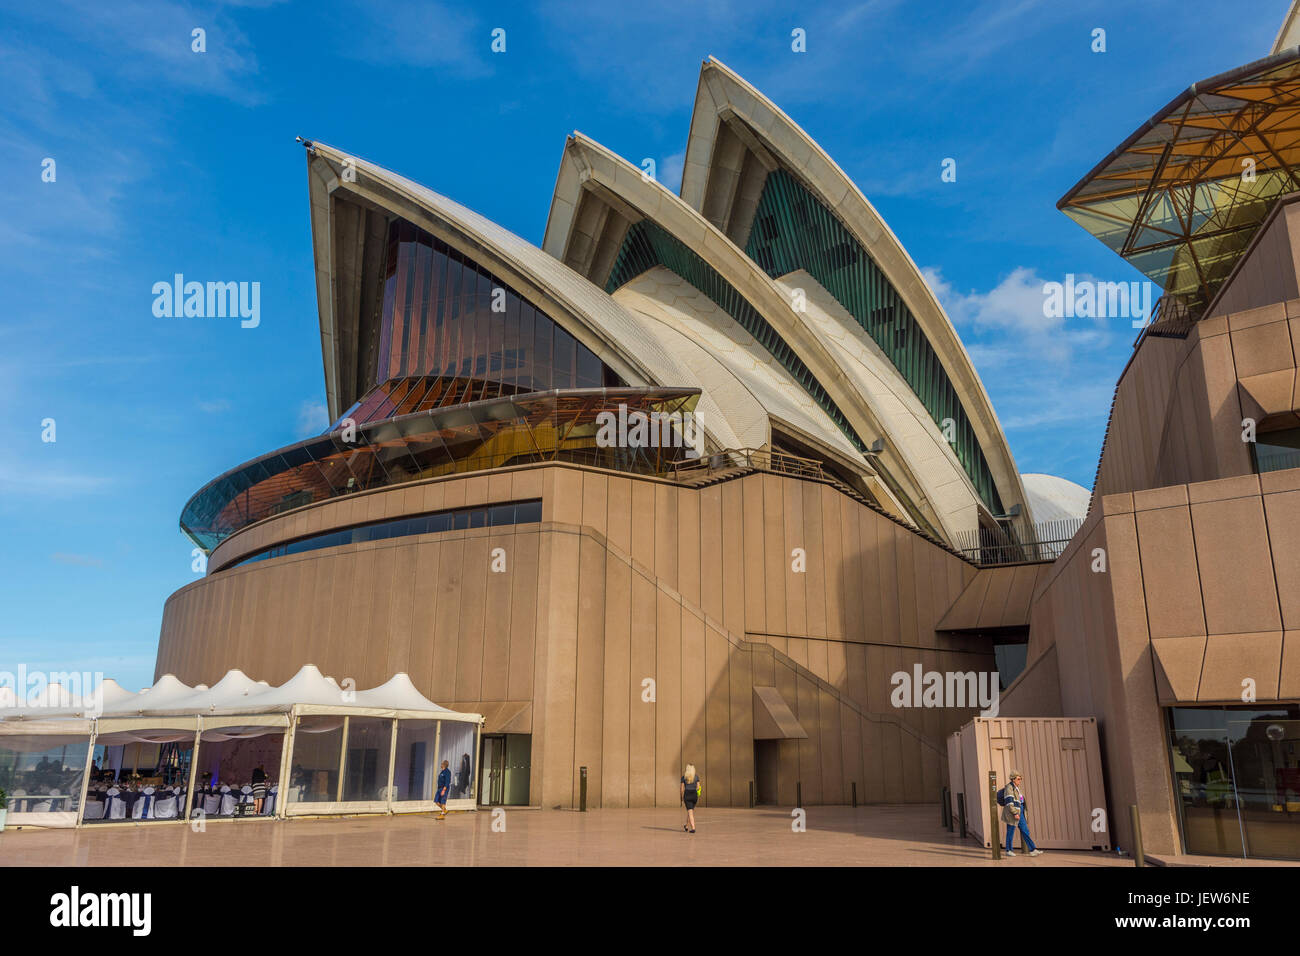 SYDNEY, AUSTRALIE - AVRIL 19 : Détail de l'Opéra de Sydney conçu par l'architecte danois Jørn Utzon est le célèbre monument de Sydney et l'un des plus reconnu Banque D'Images